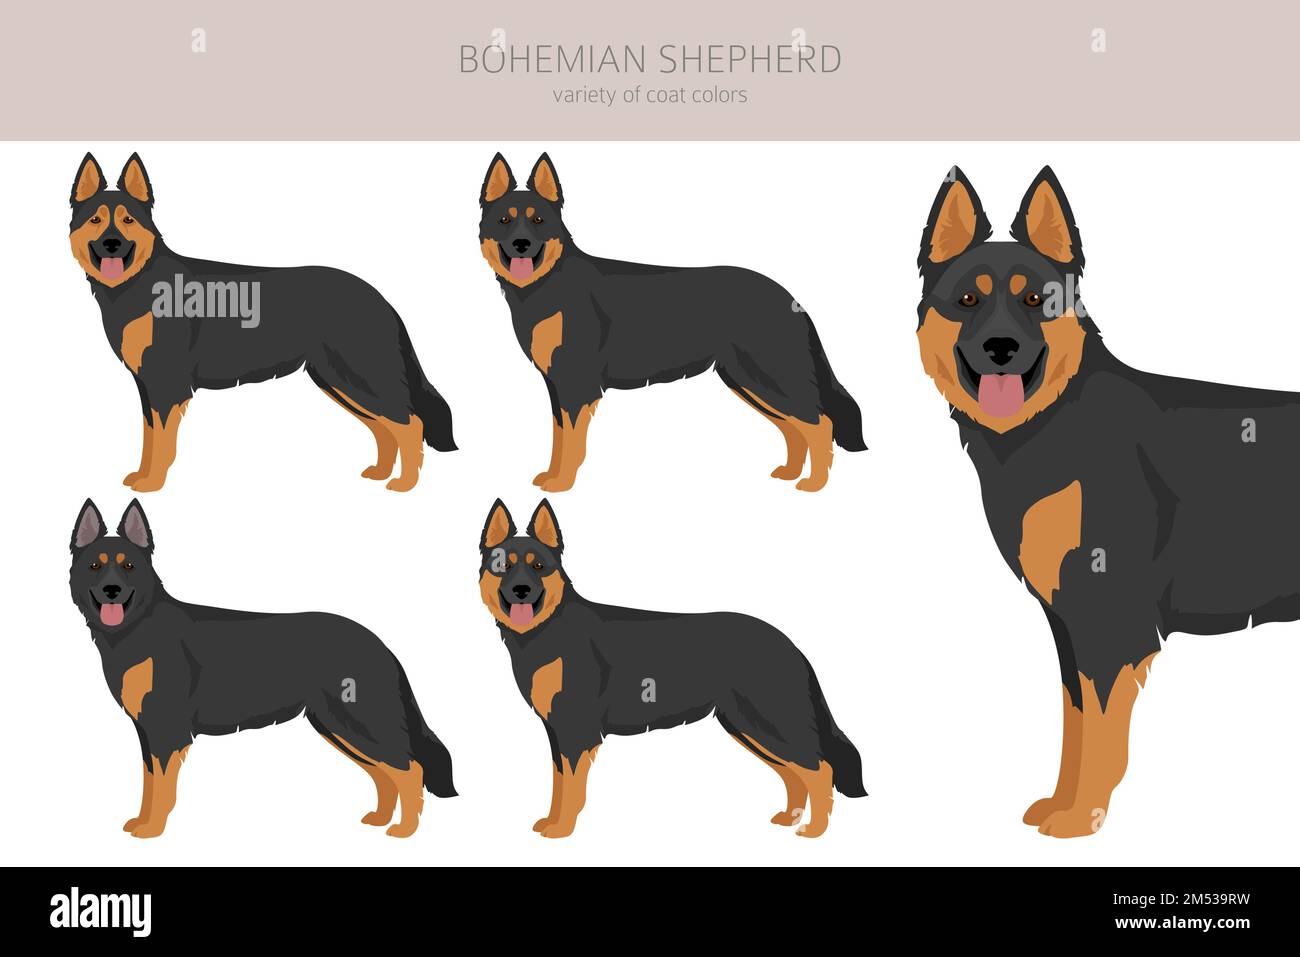 Clipart di cane pastore bohémien. Set di tutti i colori del mantello. Posizione diversa. Infografica sulle caratteristiche di tutte le razze di cani. Illustrazione vettoriale Illustrazione Vettoriale